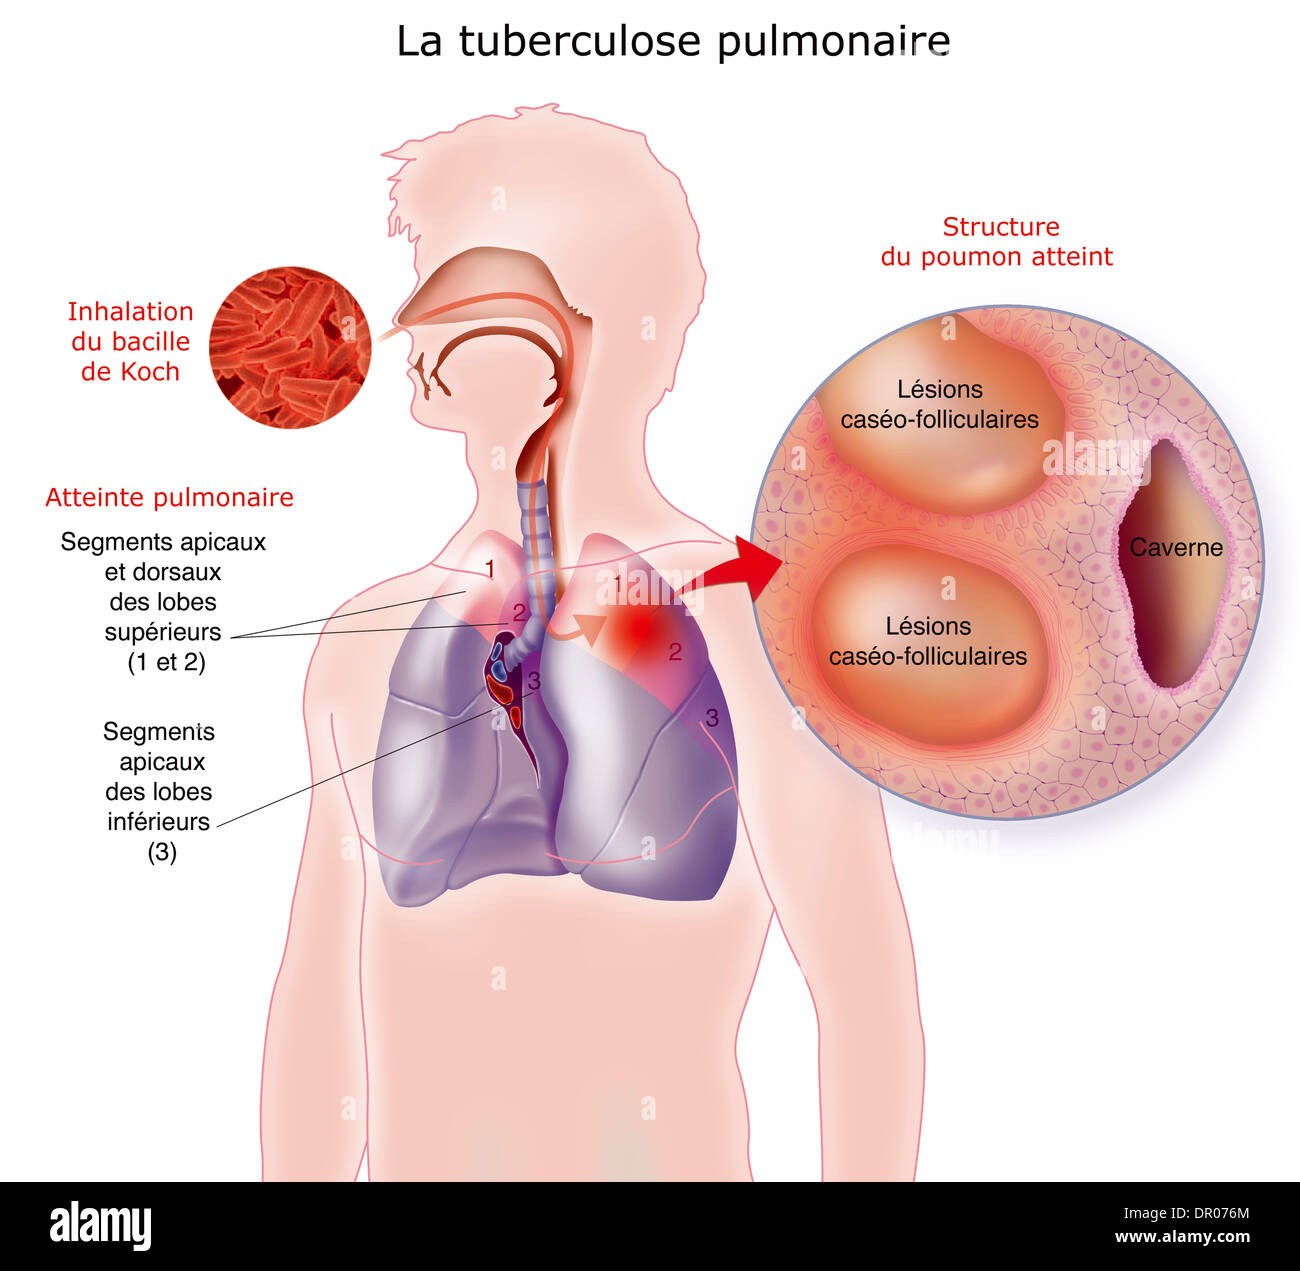 La tuberculose pulmonaire, dessin Banque D'Images